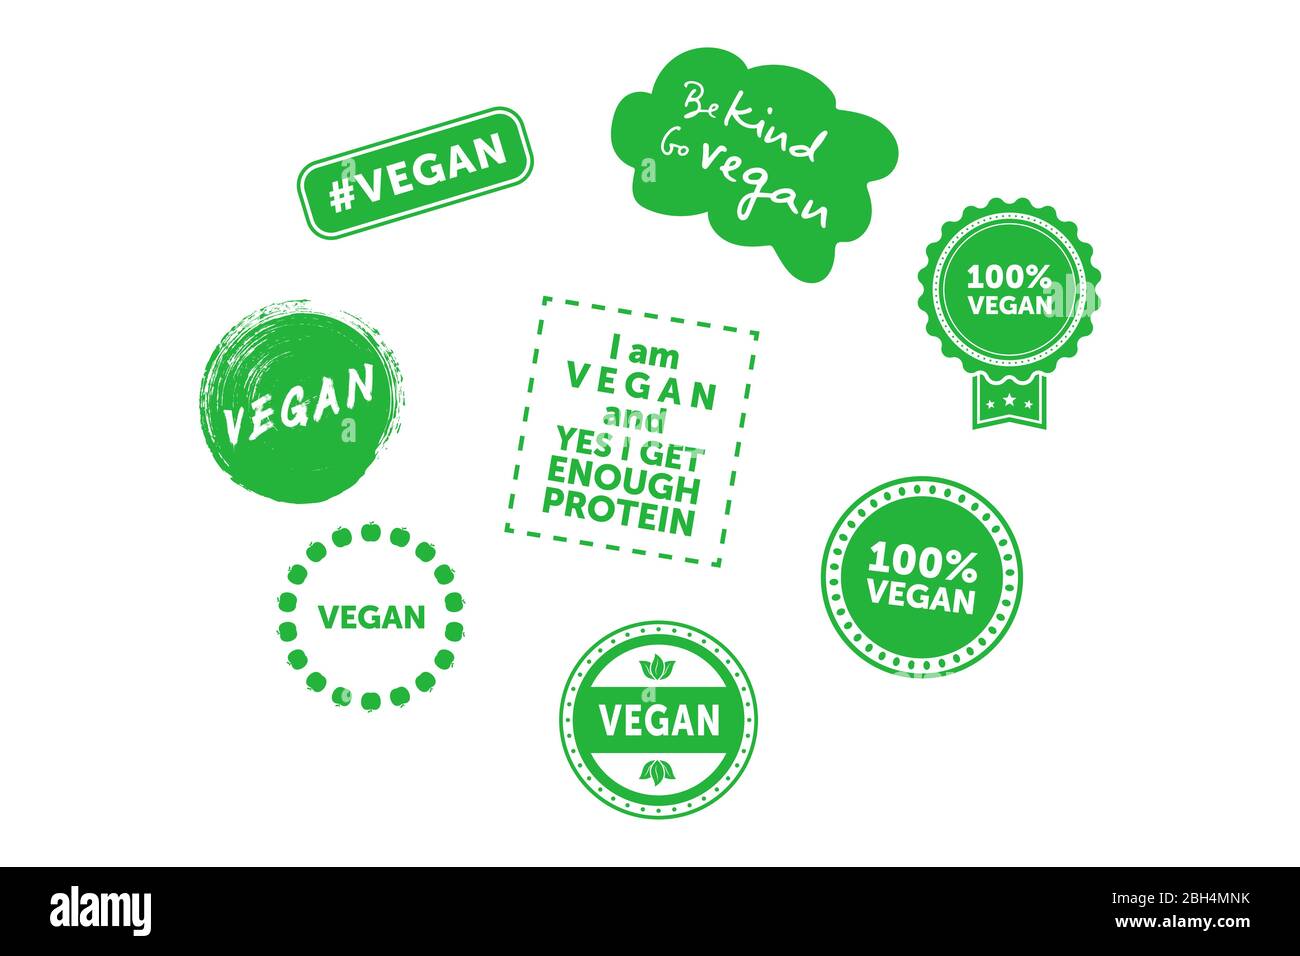 Sammlung von verschiedenen Zeichen zum Thema vegan. Seien Sie freundlich, gehen Sie vegan. Vektorgrafik. Stock Vektor